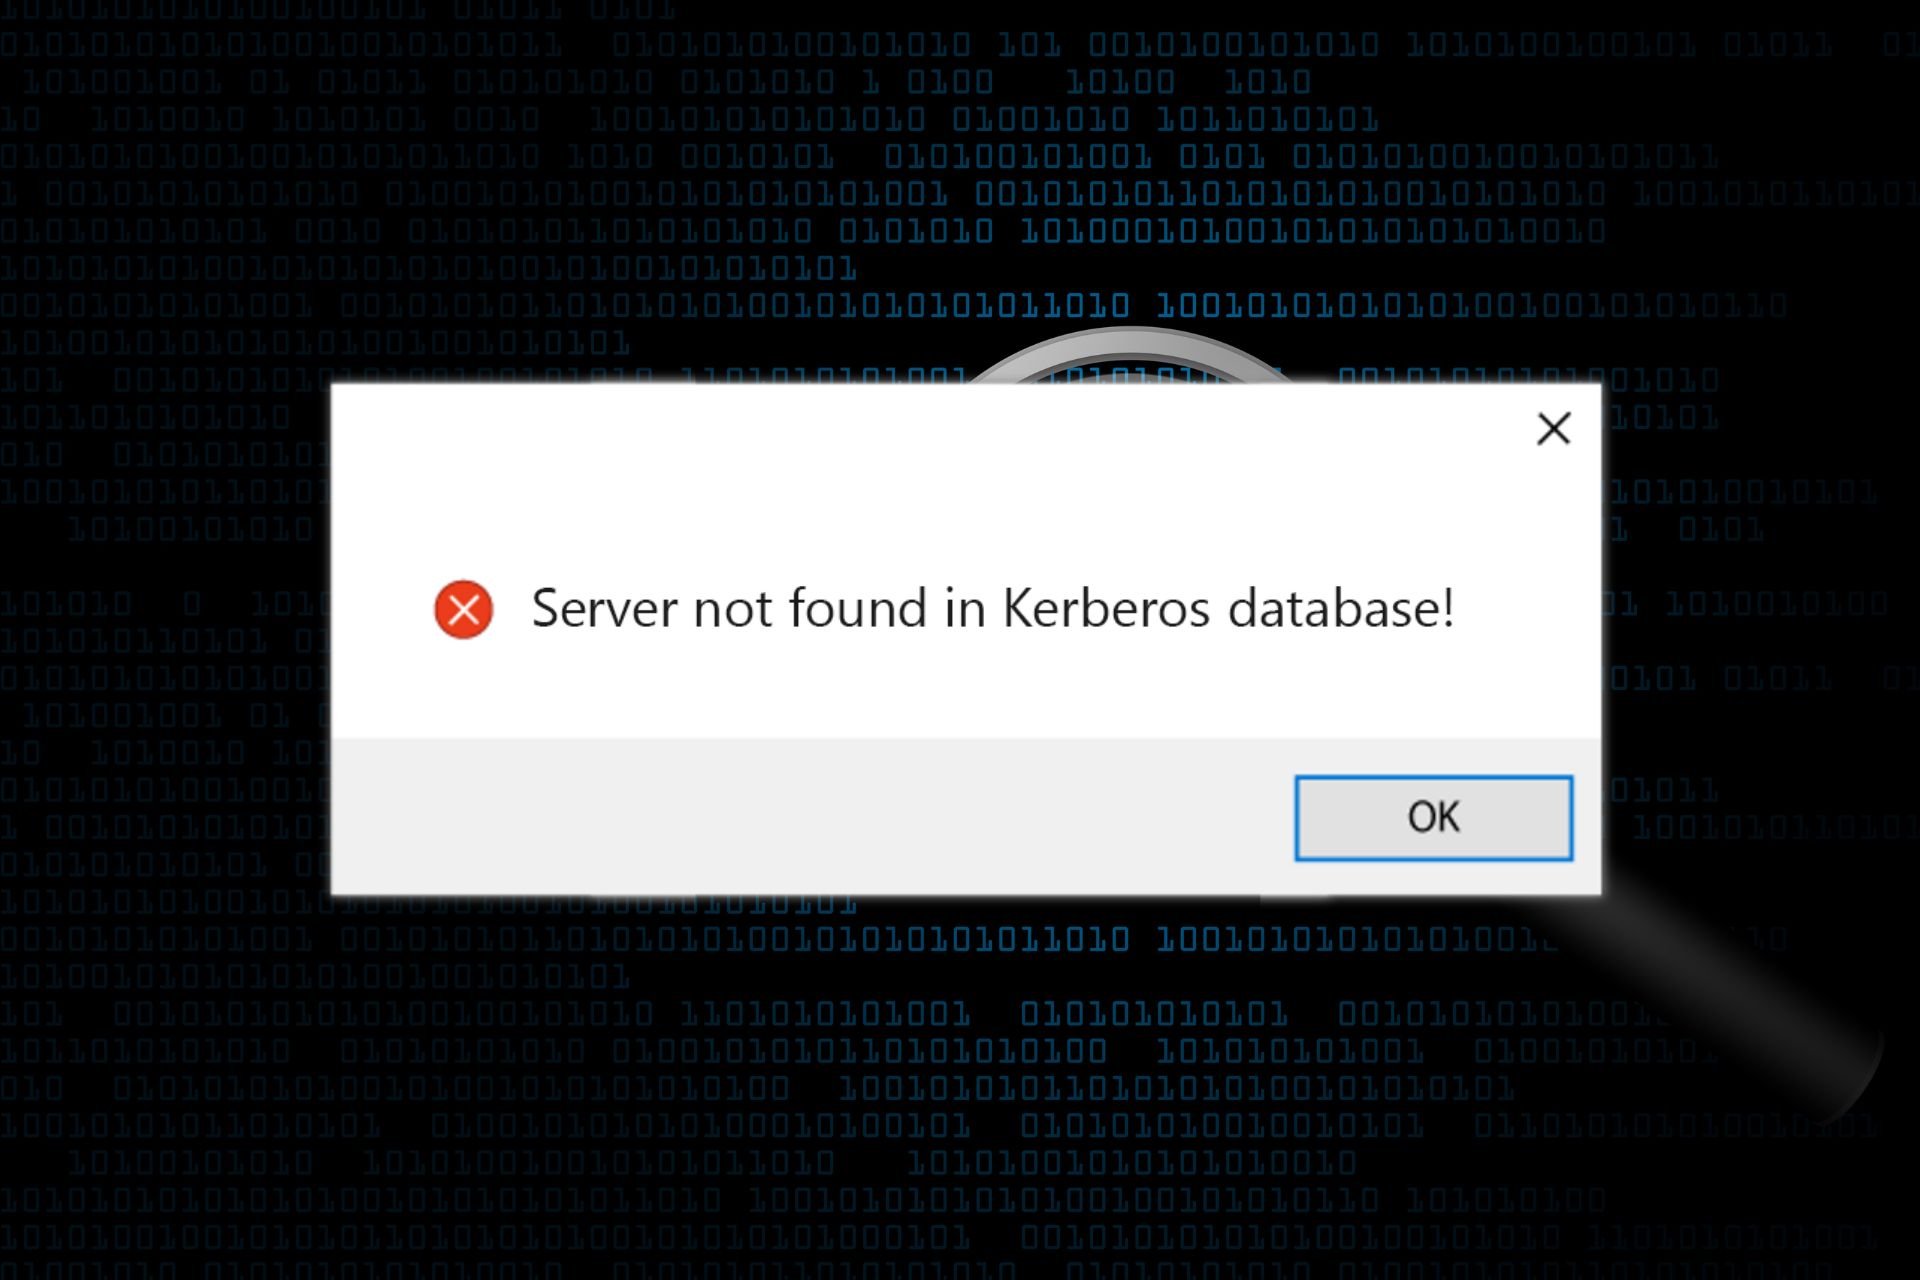 corrija el servidor no encontrado en la base de datos de Kerberos: